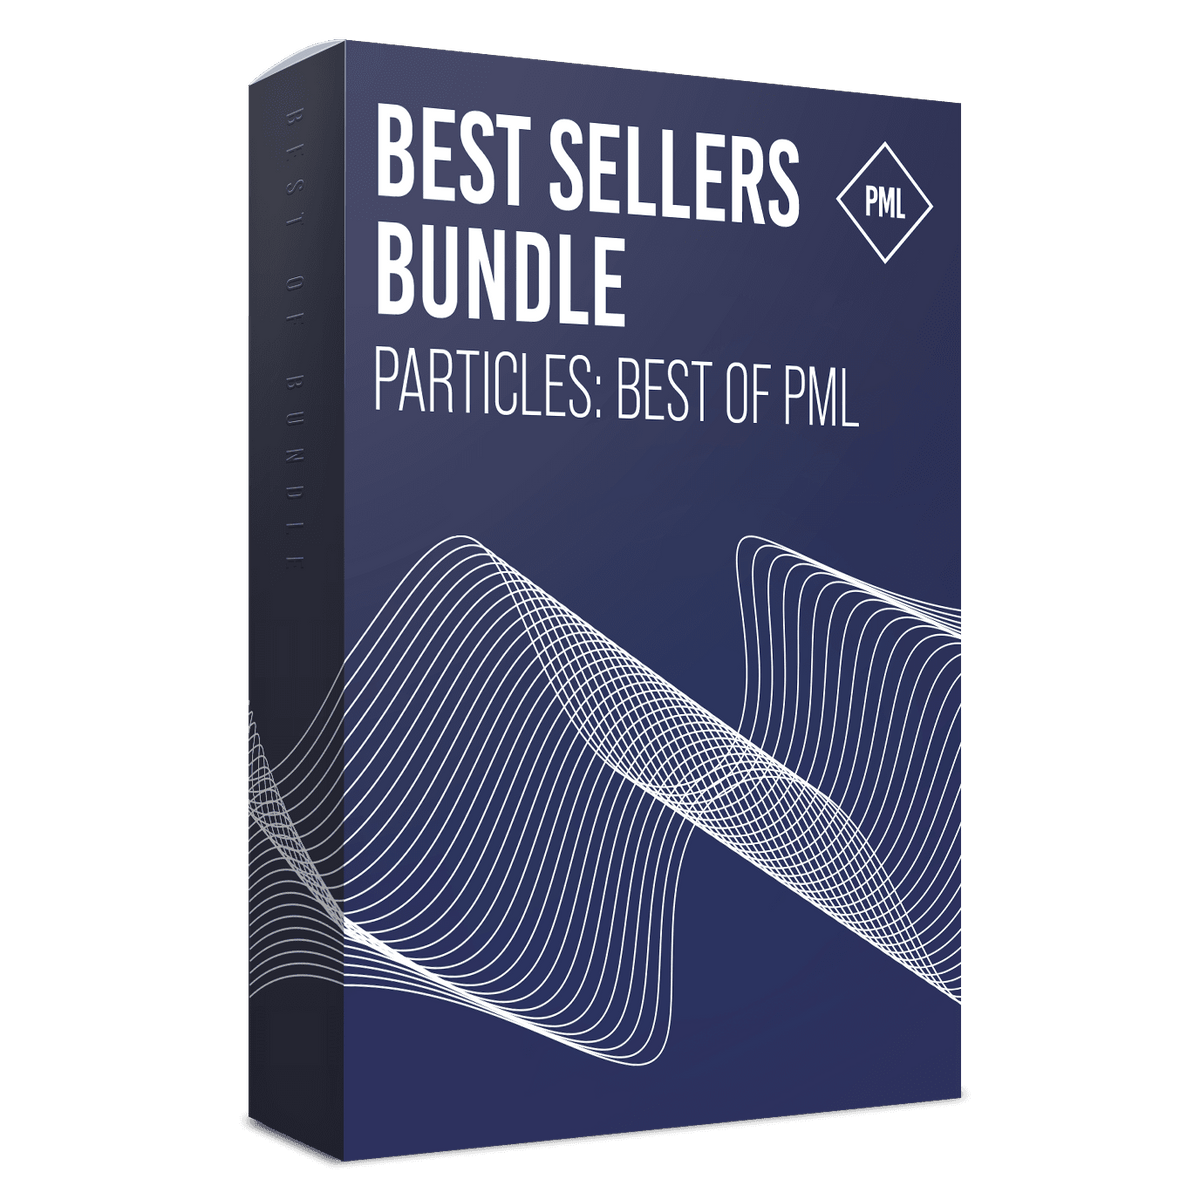 PML Best Sellers - Particles Bundle Product Box